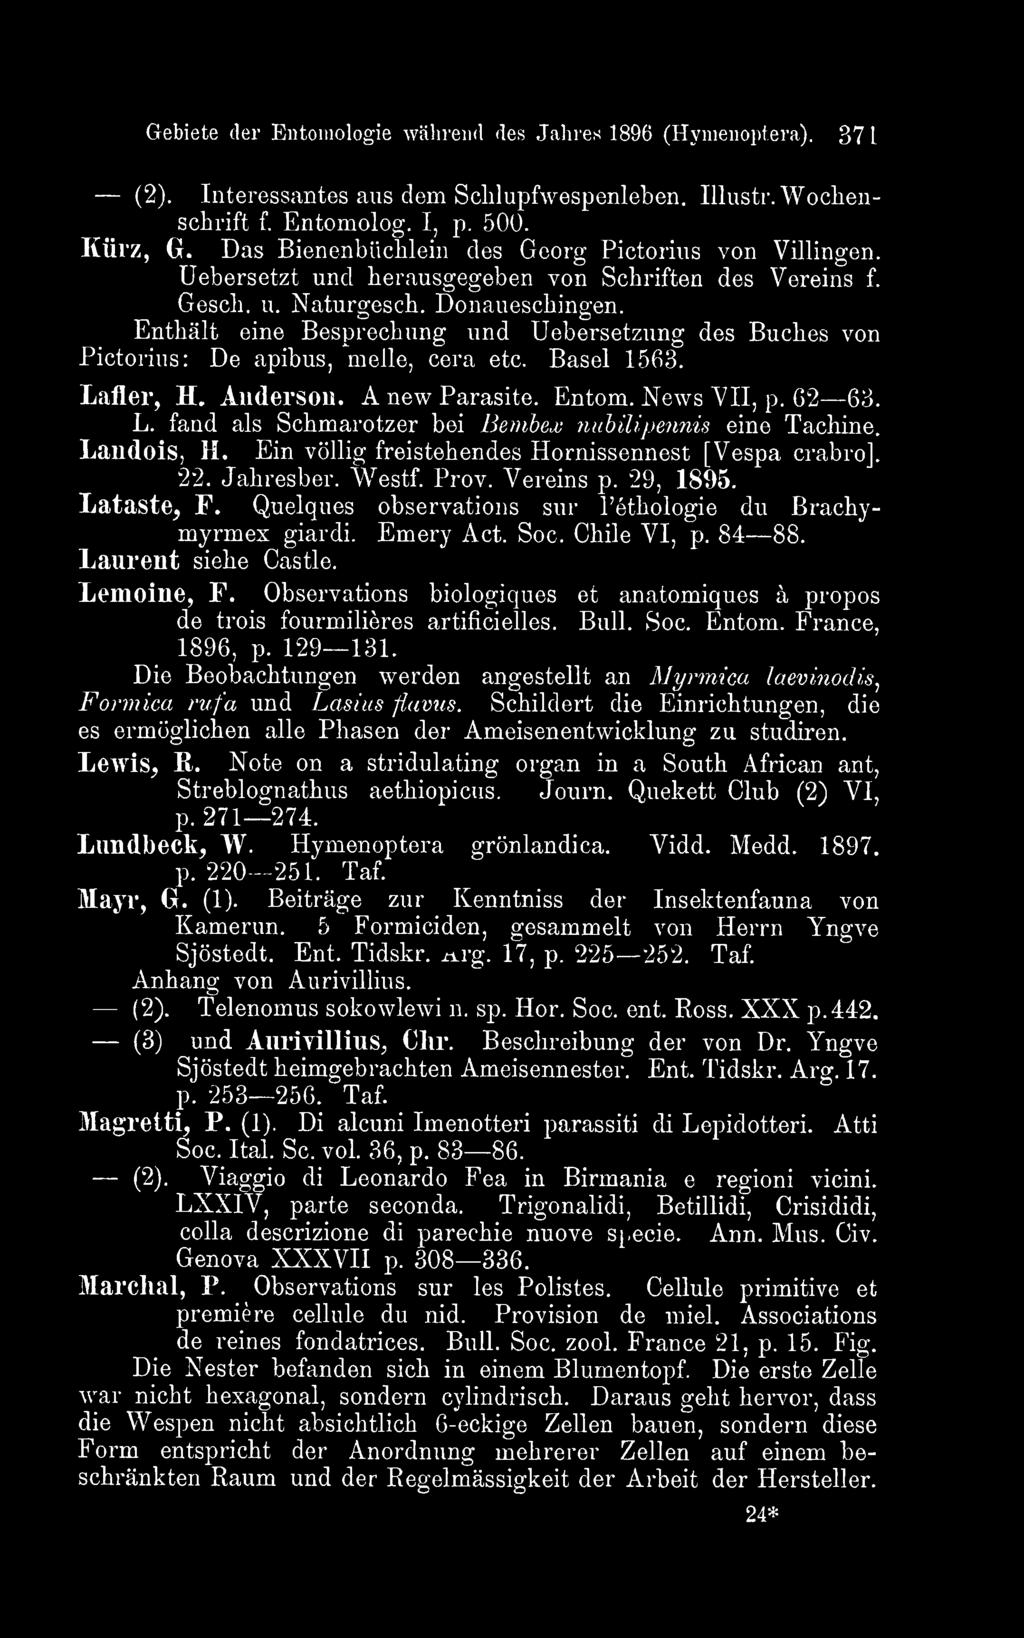 Soc. Chile VI, p. 84 88. Laurent siehe Castle. Lemoine, F. Observations biologiques et anatomiques a propos de trois fourmilieres artificielles. Bull. Soc. Entom. France, 1896, p. 129 131.